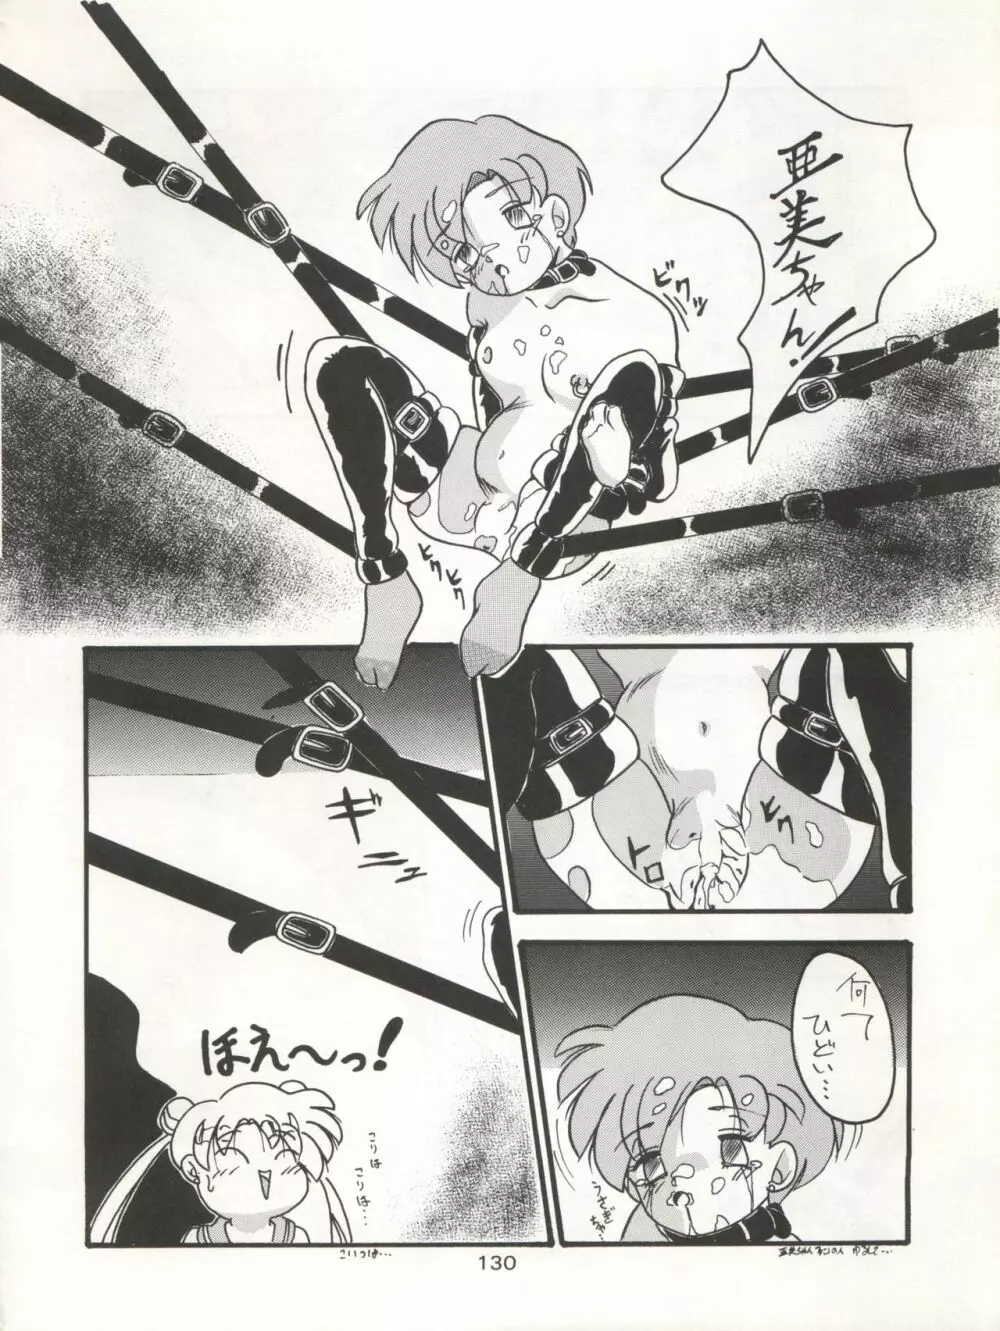 KATZE 7 上巻 - page131